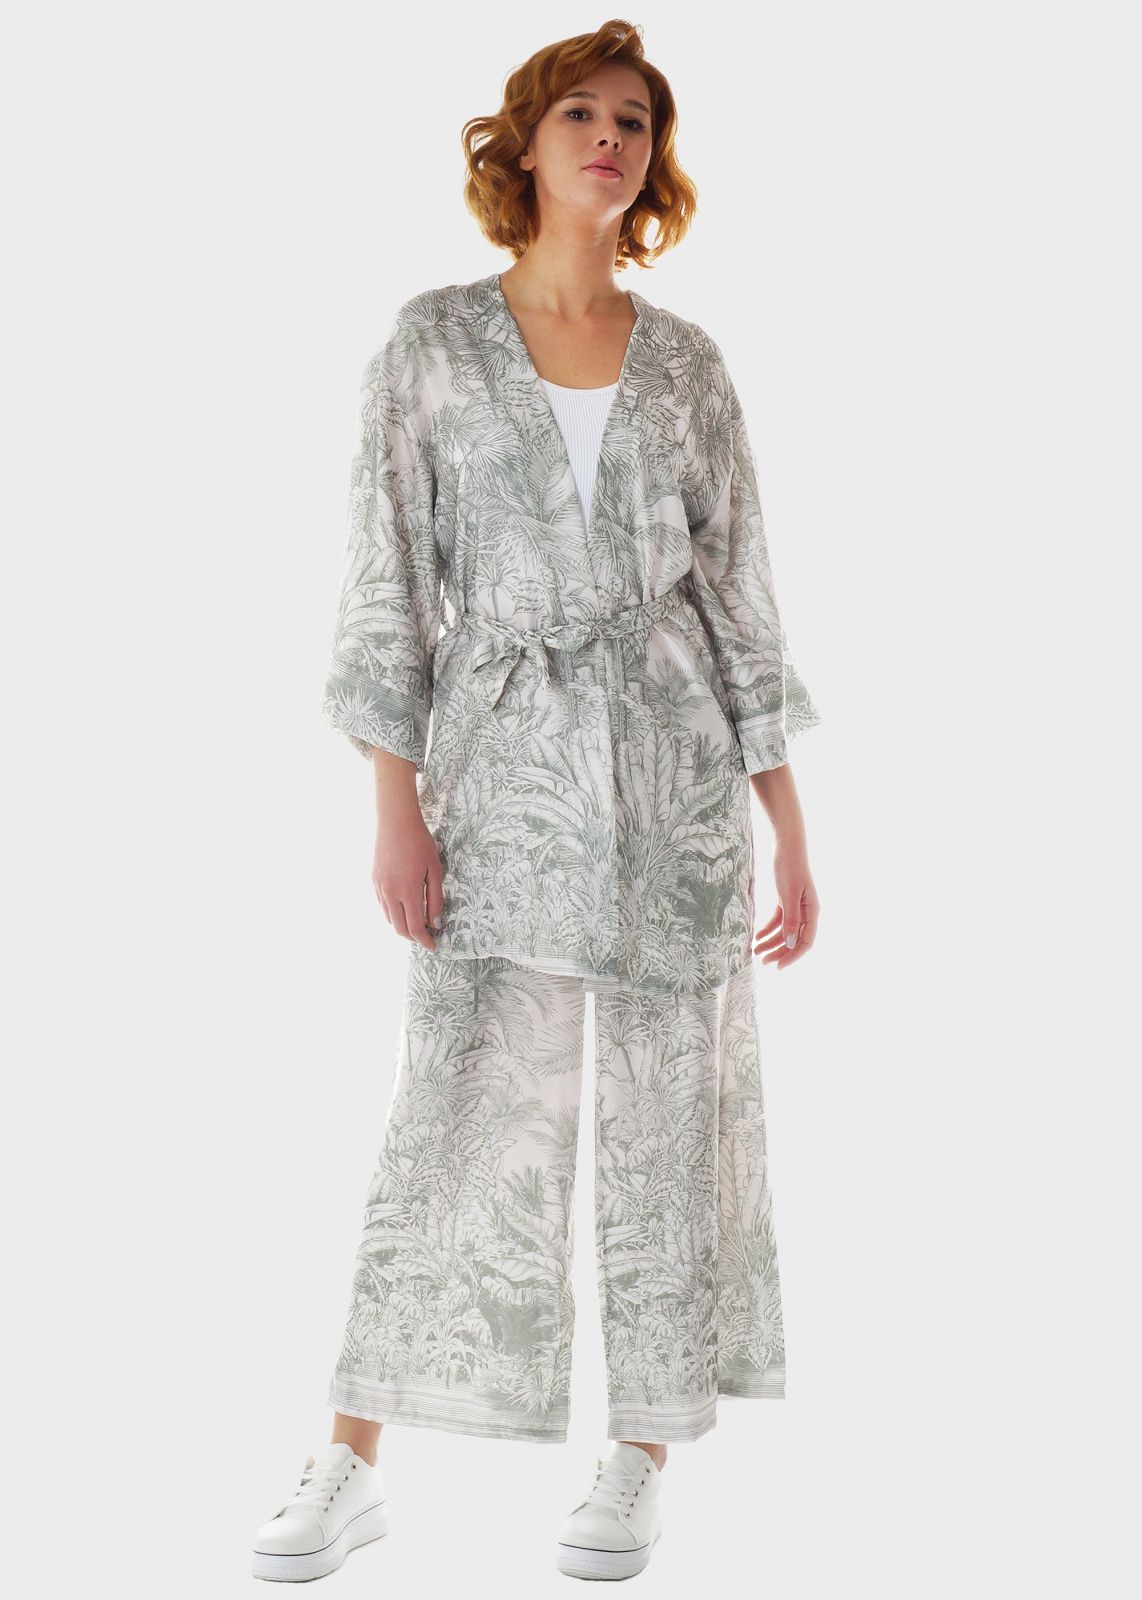 Γυναικείο Set όψη saten κιμονό & παντελόνα λάστιχο στη μέση all print. ΧΑΚΙ